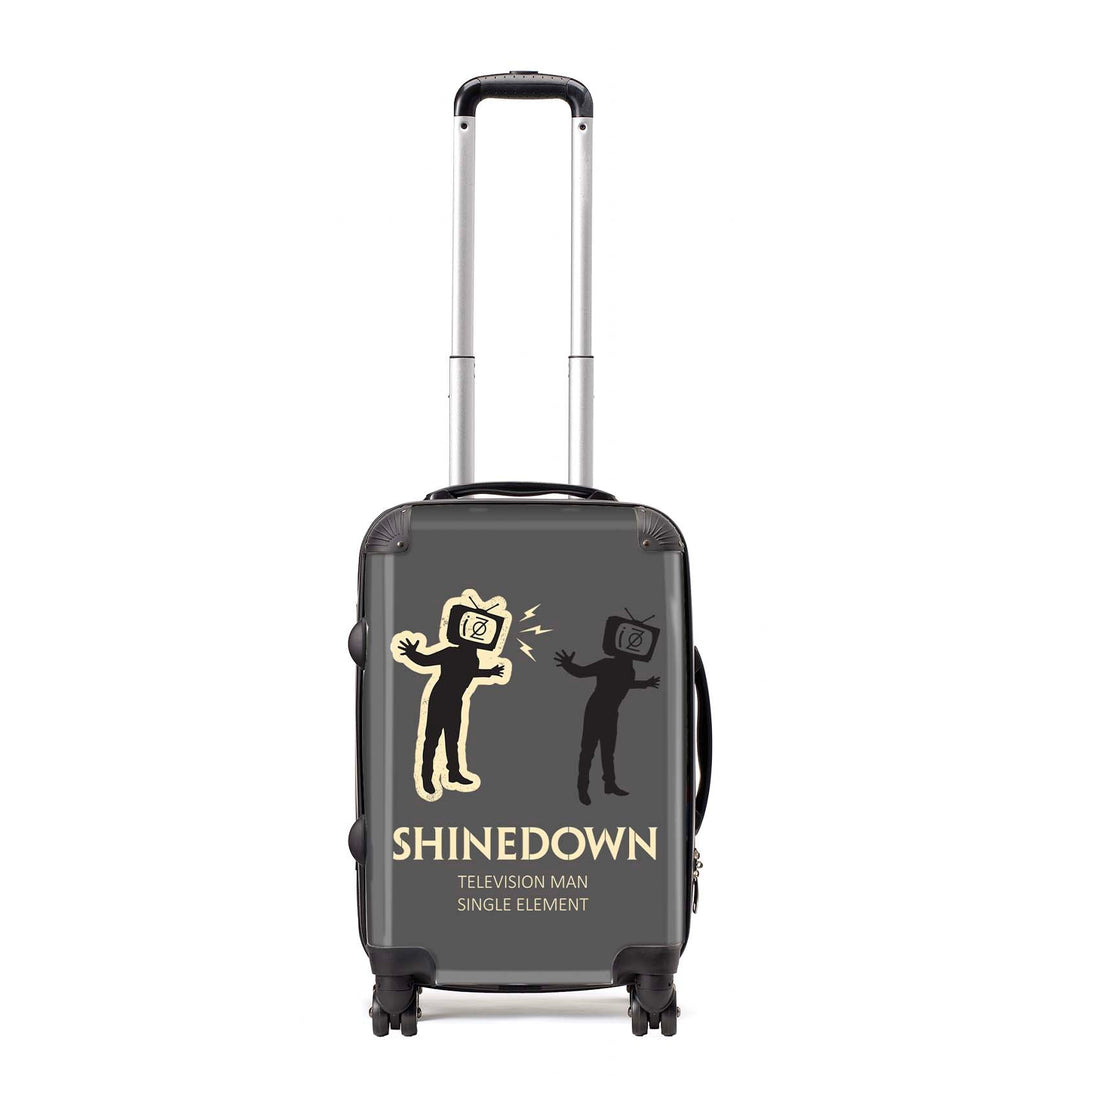 Rocksax Shinedown Travel Bag Luggage - TV